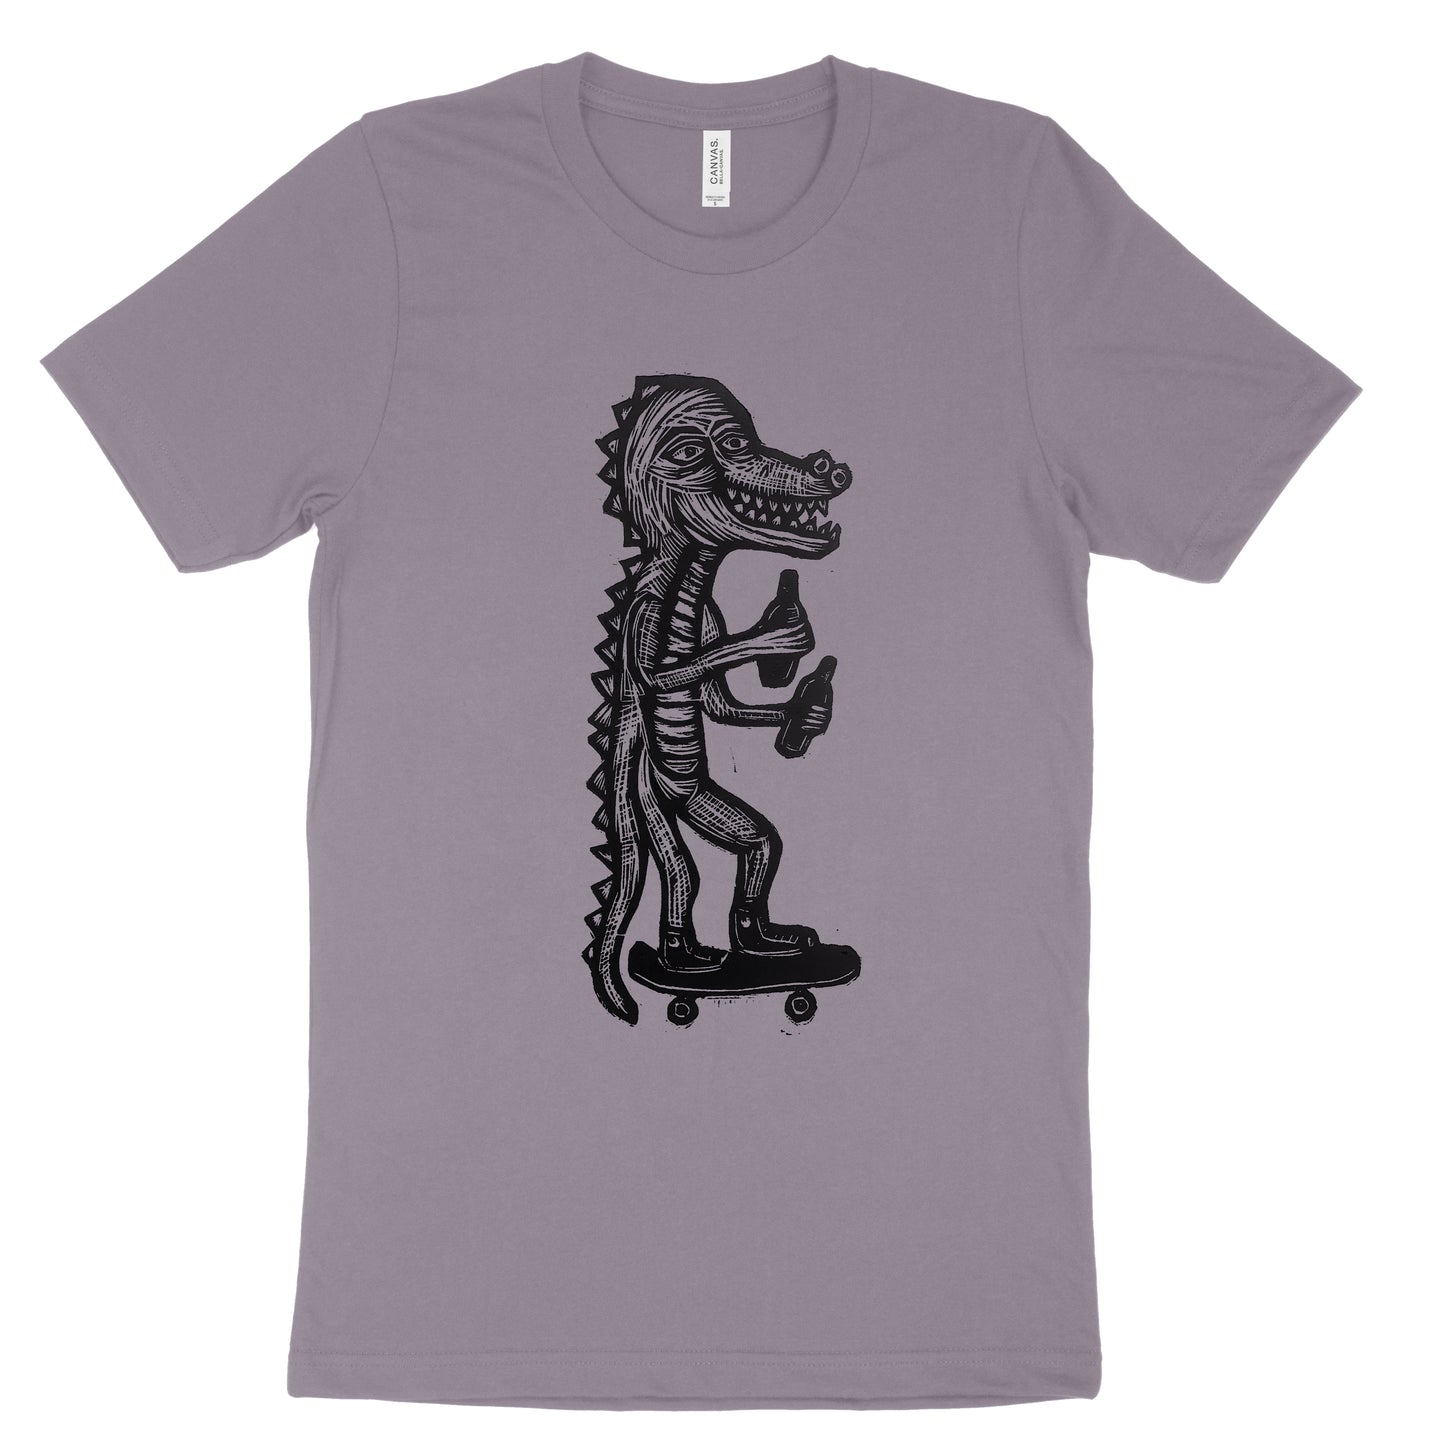 Skating Gator Woodcut Printed T-shirt